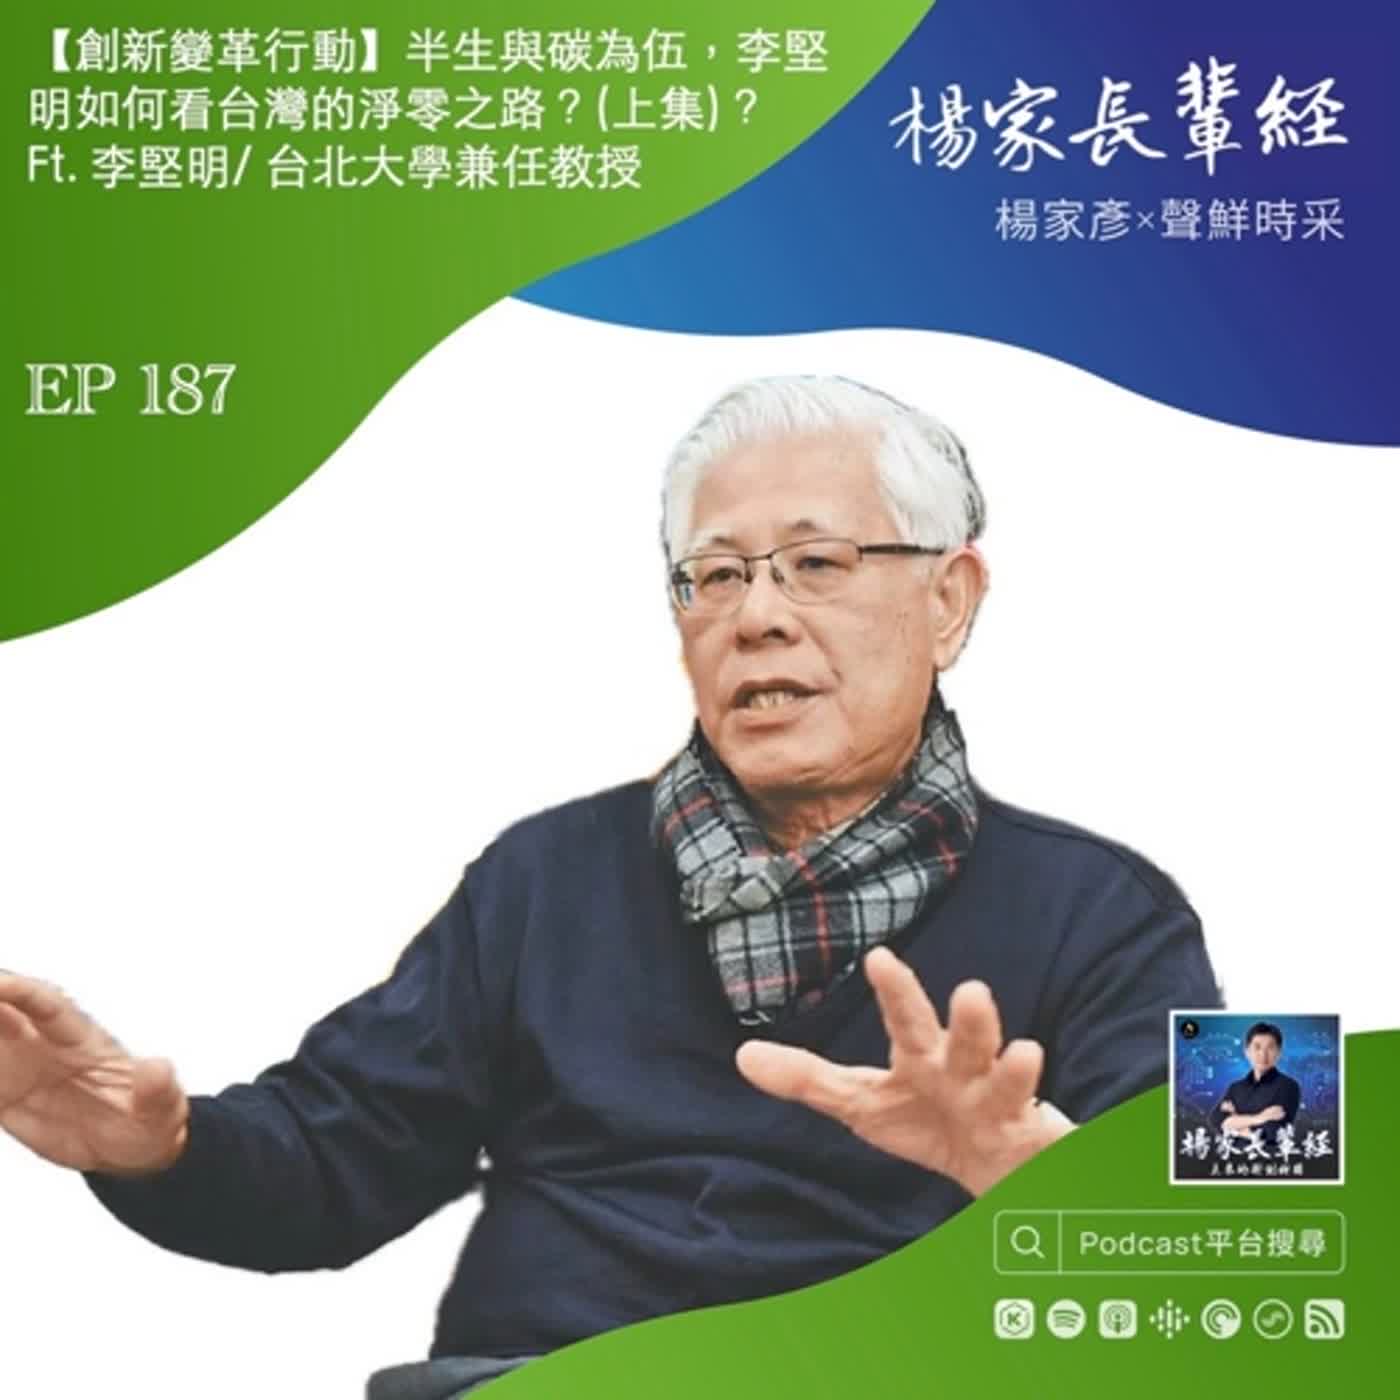 【創新變革行動】半生與溫室氣體為伍，李堅明如何看台灣的淨零之路？(上集) Ft. 李堅明/ 台灣低碳社會與綠色經濟推廣協會理事長、台北大學兼任教授